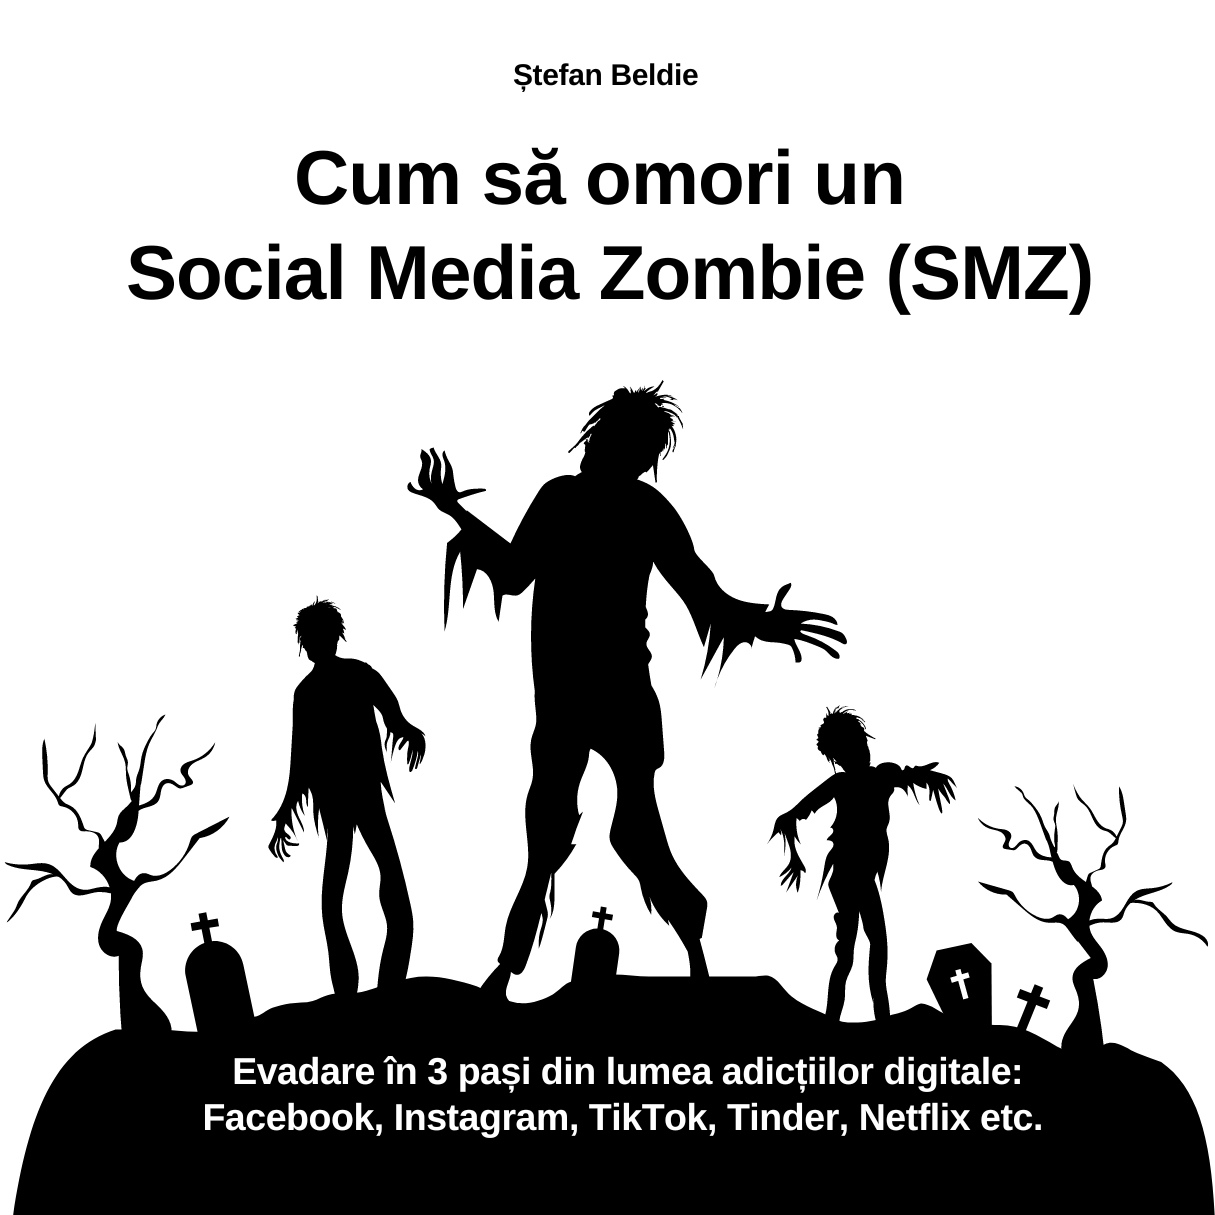 Ghidul Cum să omori un Social Media Zombie (SMZ) - metoda de evadare din lumea adicțiilor digitale.